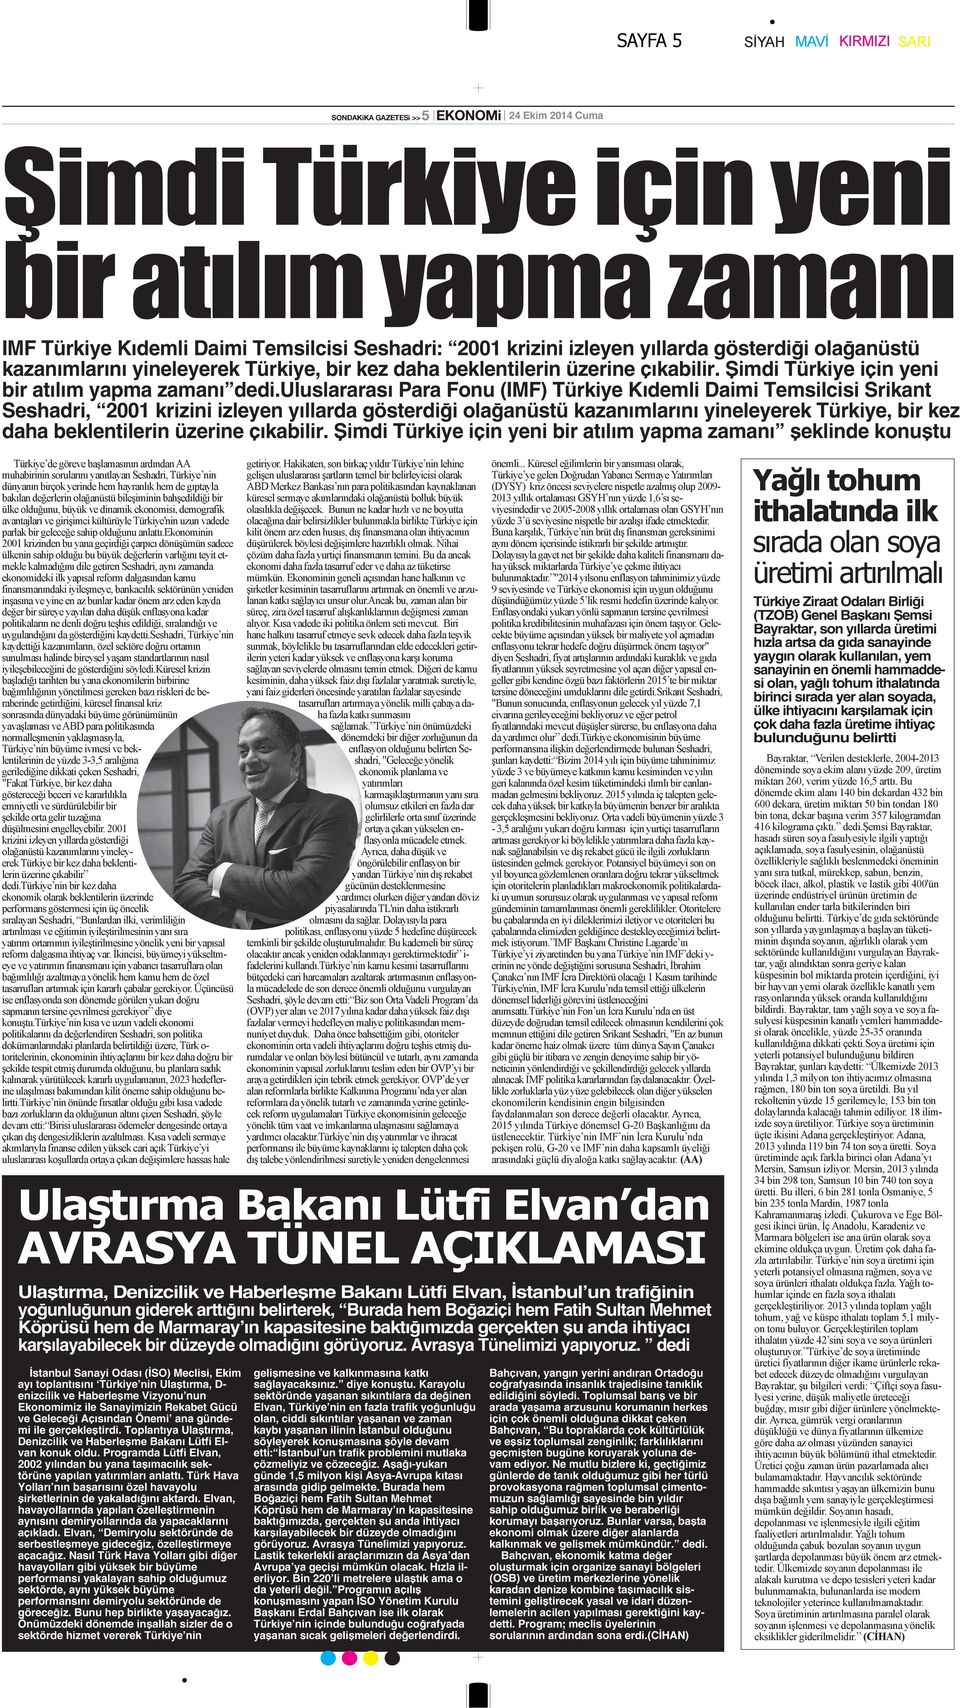 uluslararası Para Fonu (IMF) Türkiye Kıdemli Daimi Temsilcisi Srikant Seshadri, 2001 krizini izleyen yıllarda gösterdiği olağanüstü kazanımlarını yineleyerek Türkiye, bir kez daha beklentilerin